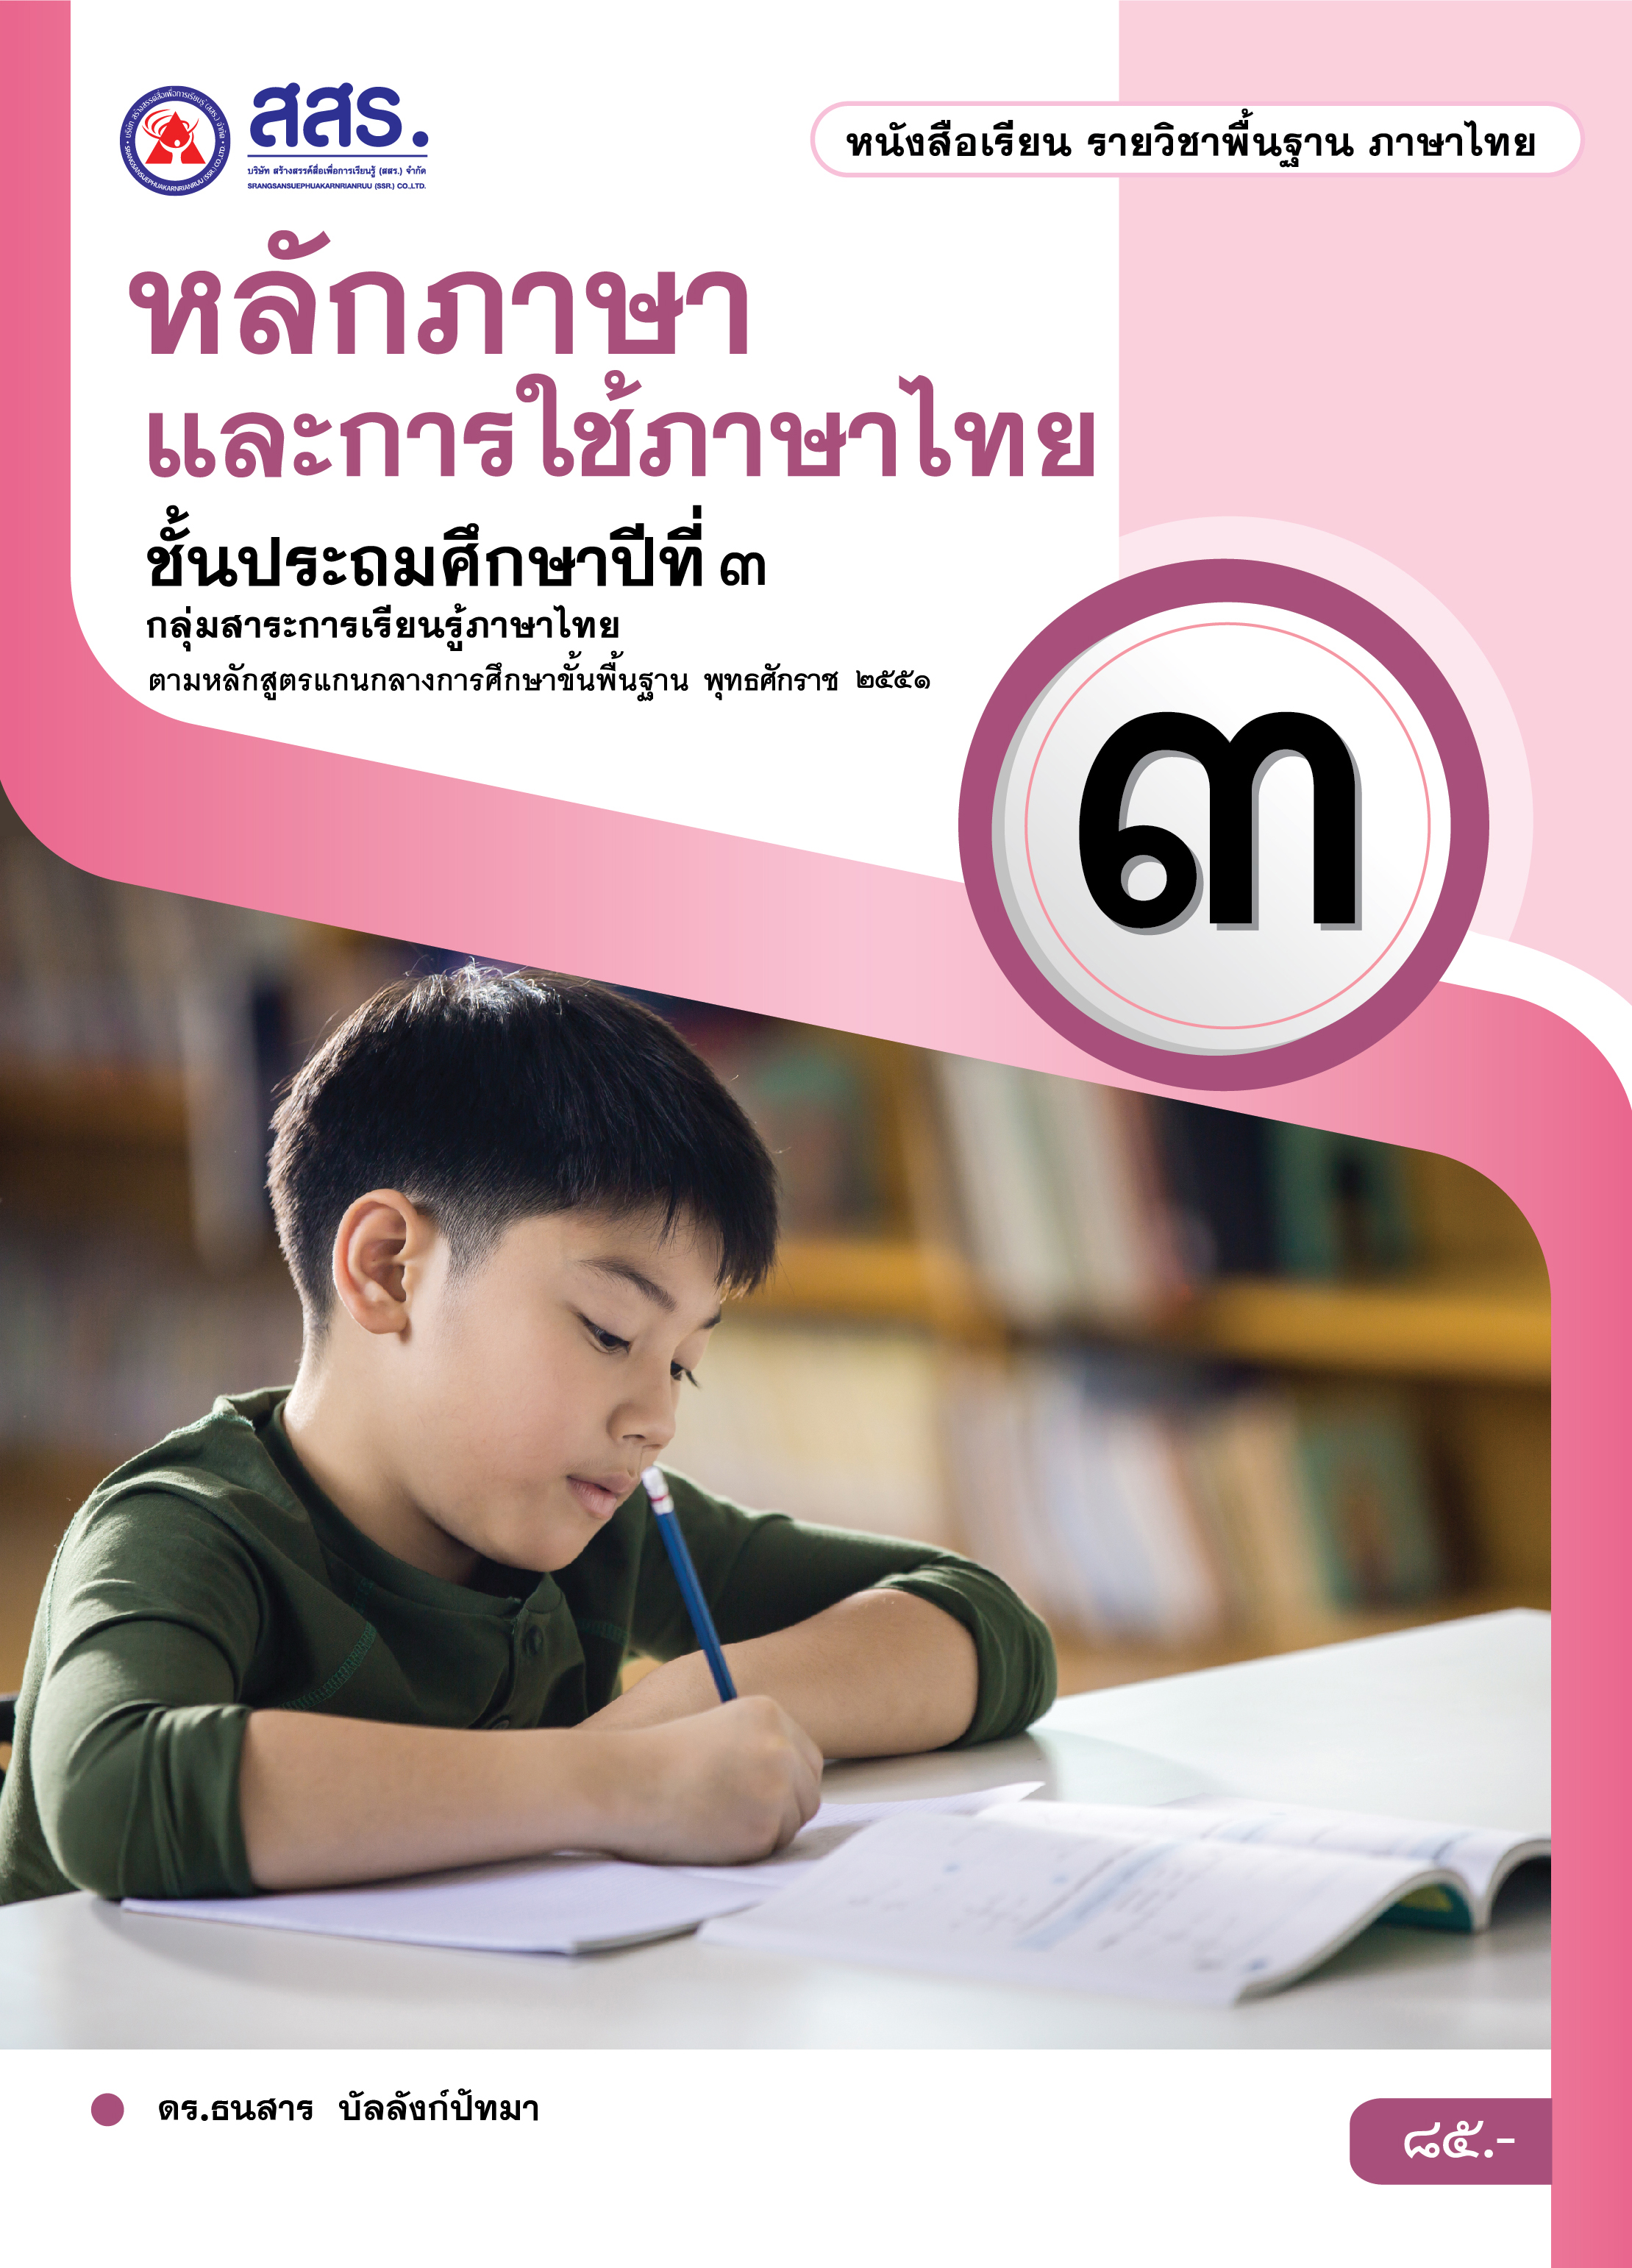 หนังสือเรียนรายวิชาพื้นฐาน หลักภาษาและการใช้ภาษาไทย ชั้นประถมศึกษาปีที่ 3 (ฉบับใบอนุญาตฯ)